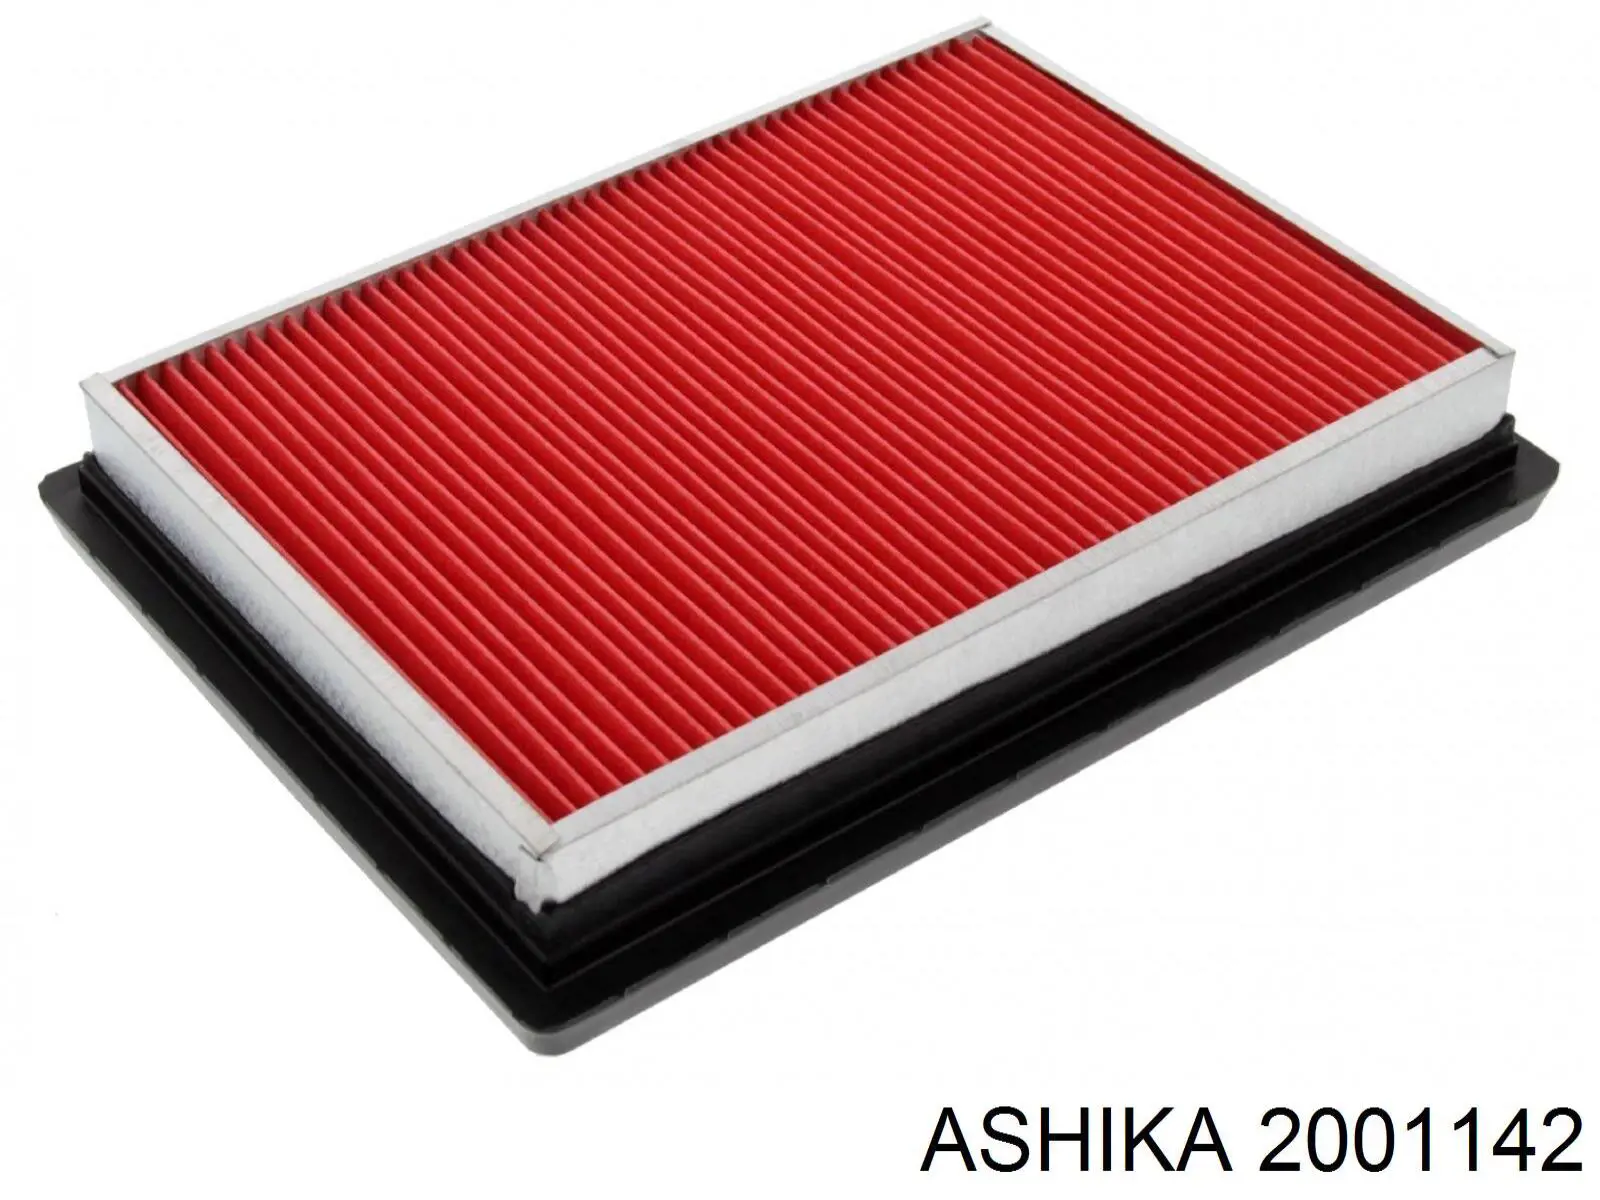 20-01-142 Ashika filtro de aire